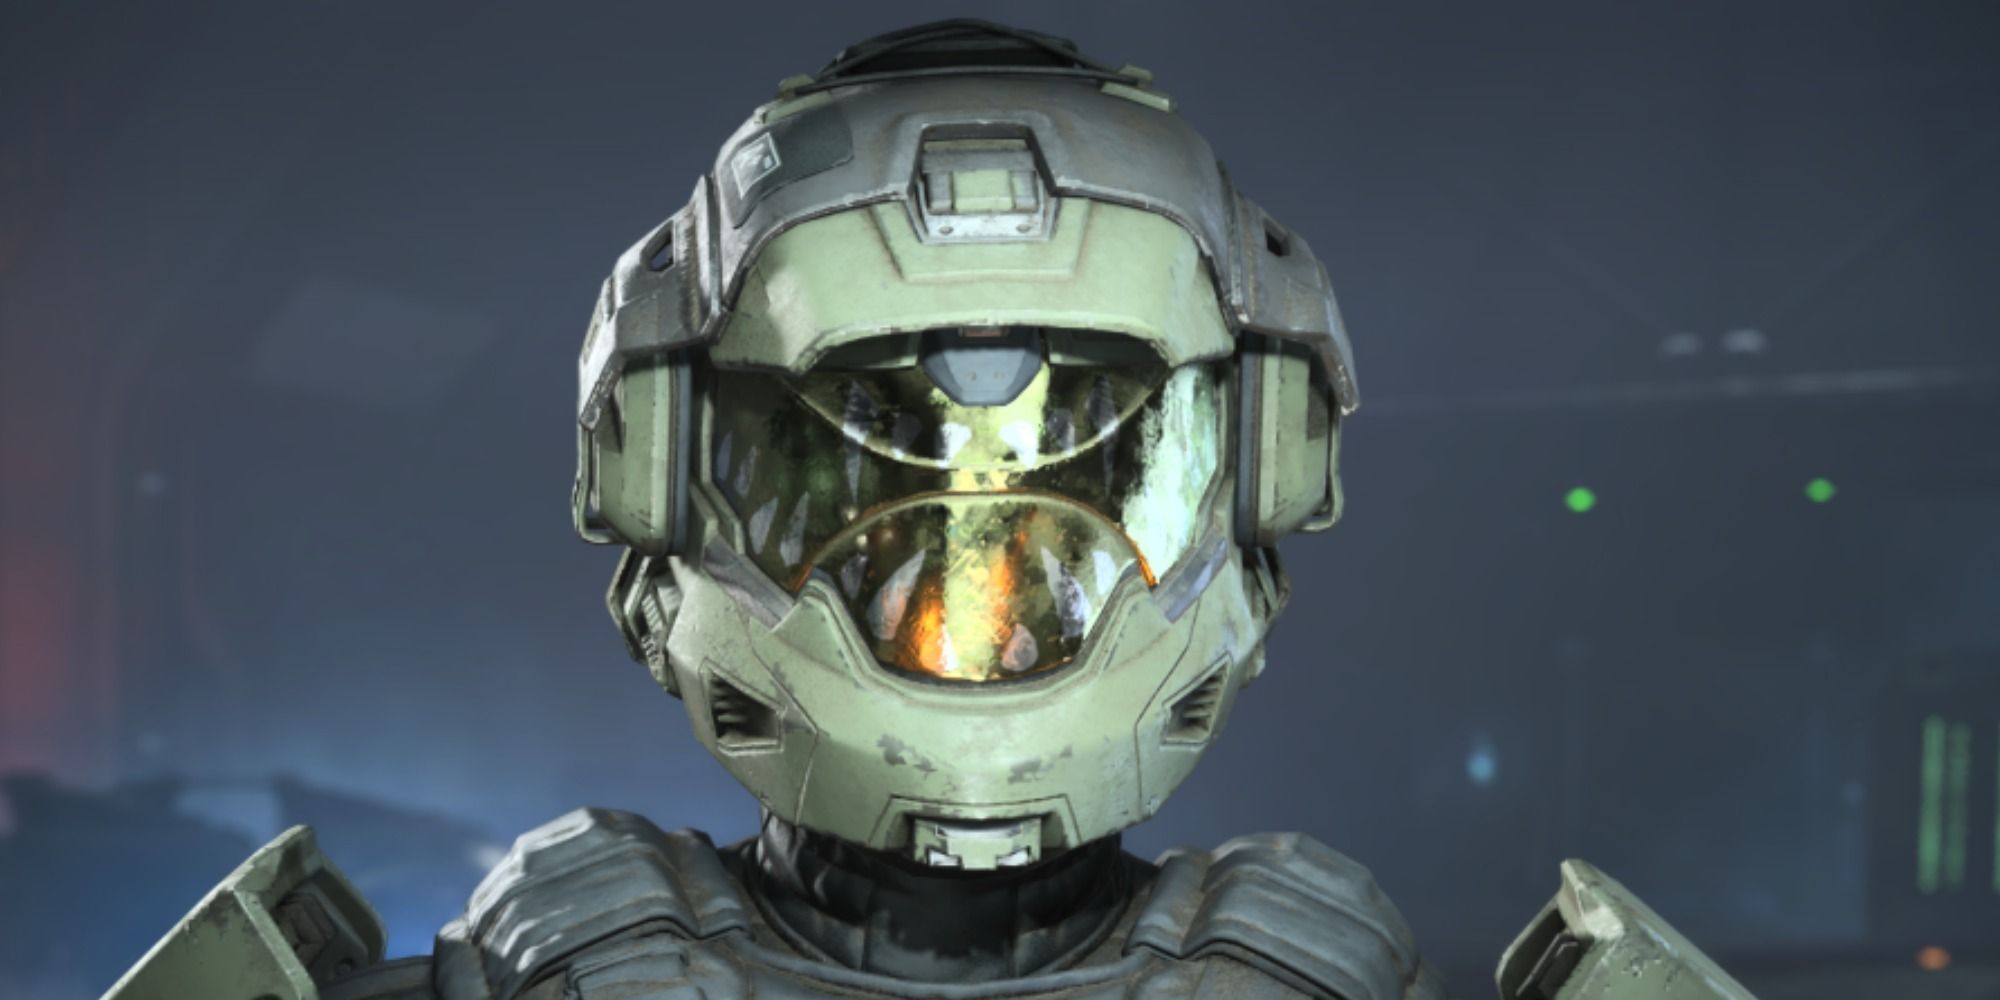 The Artaius Helmet in Halo Infinite